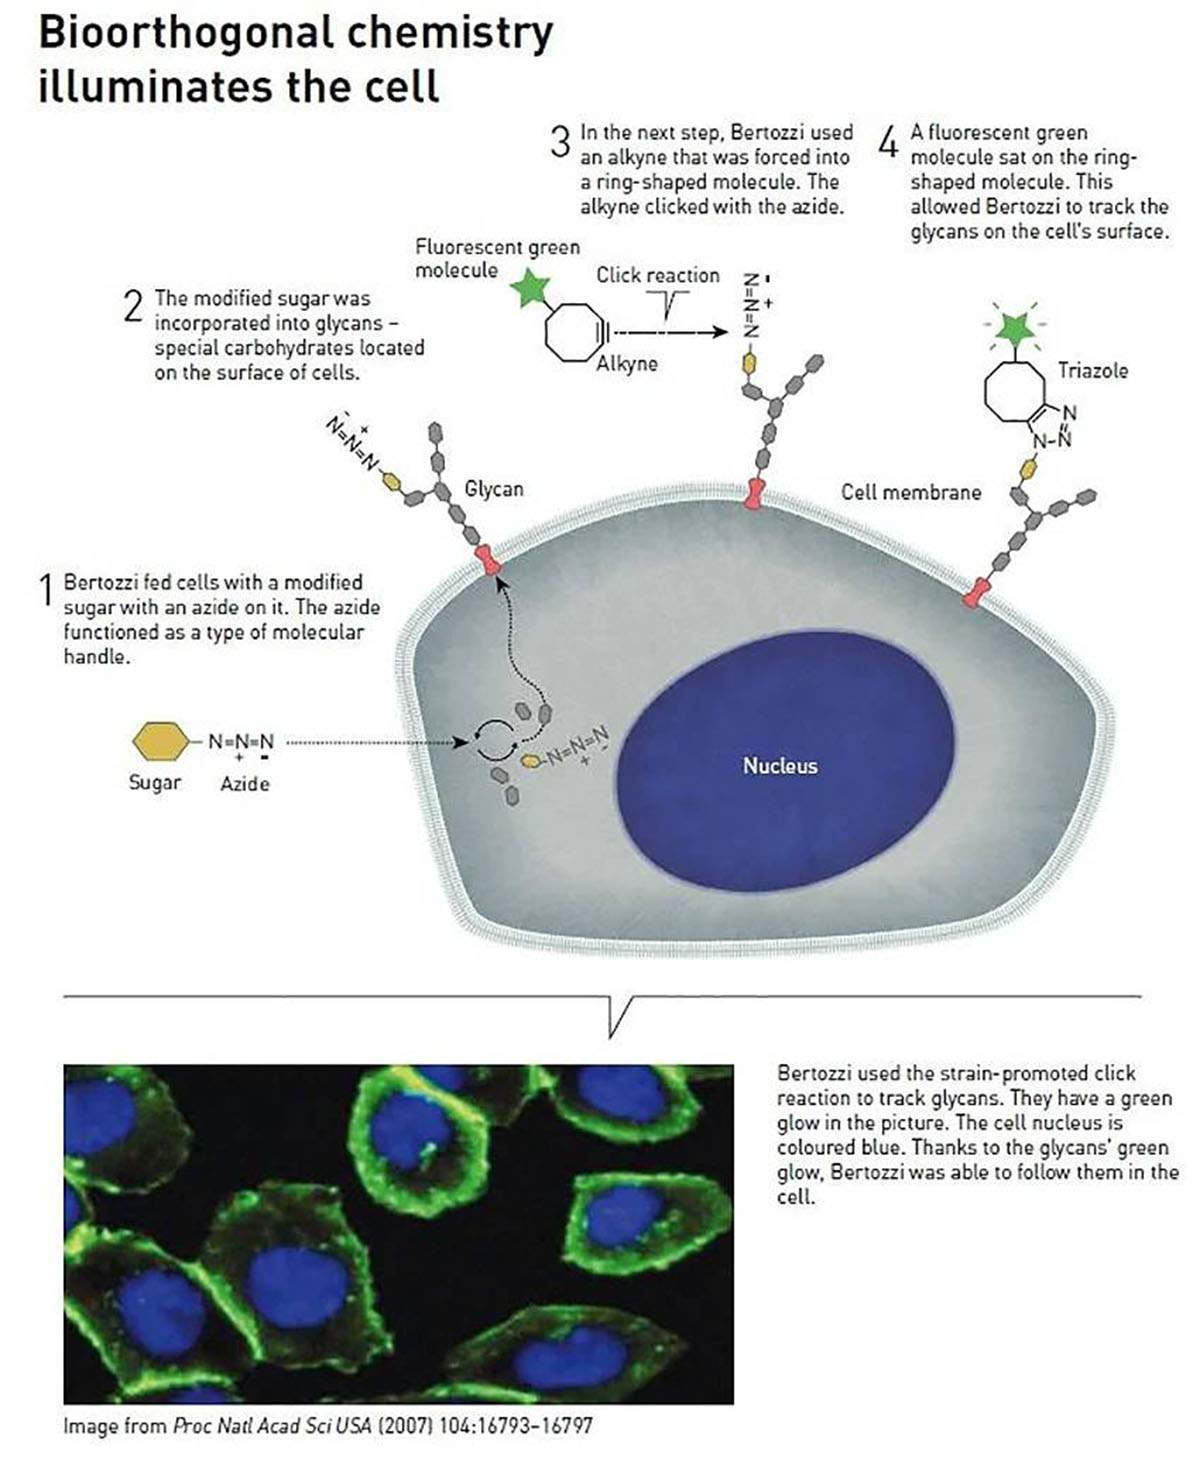 Reacciones bioortogonales para la investigación de las células / Imagen: Nobel Prize